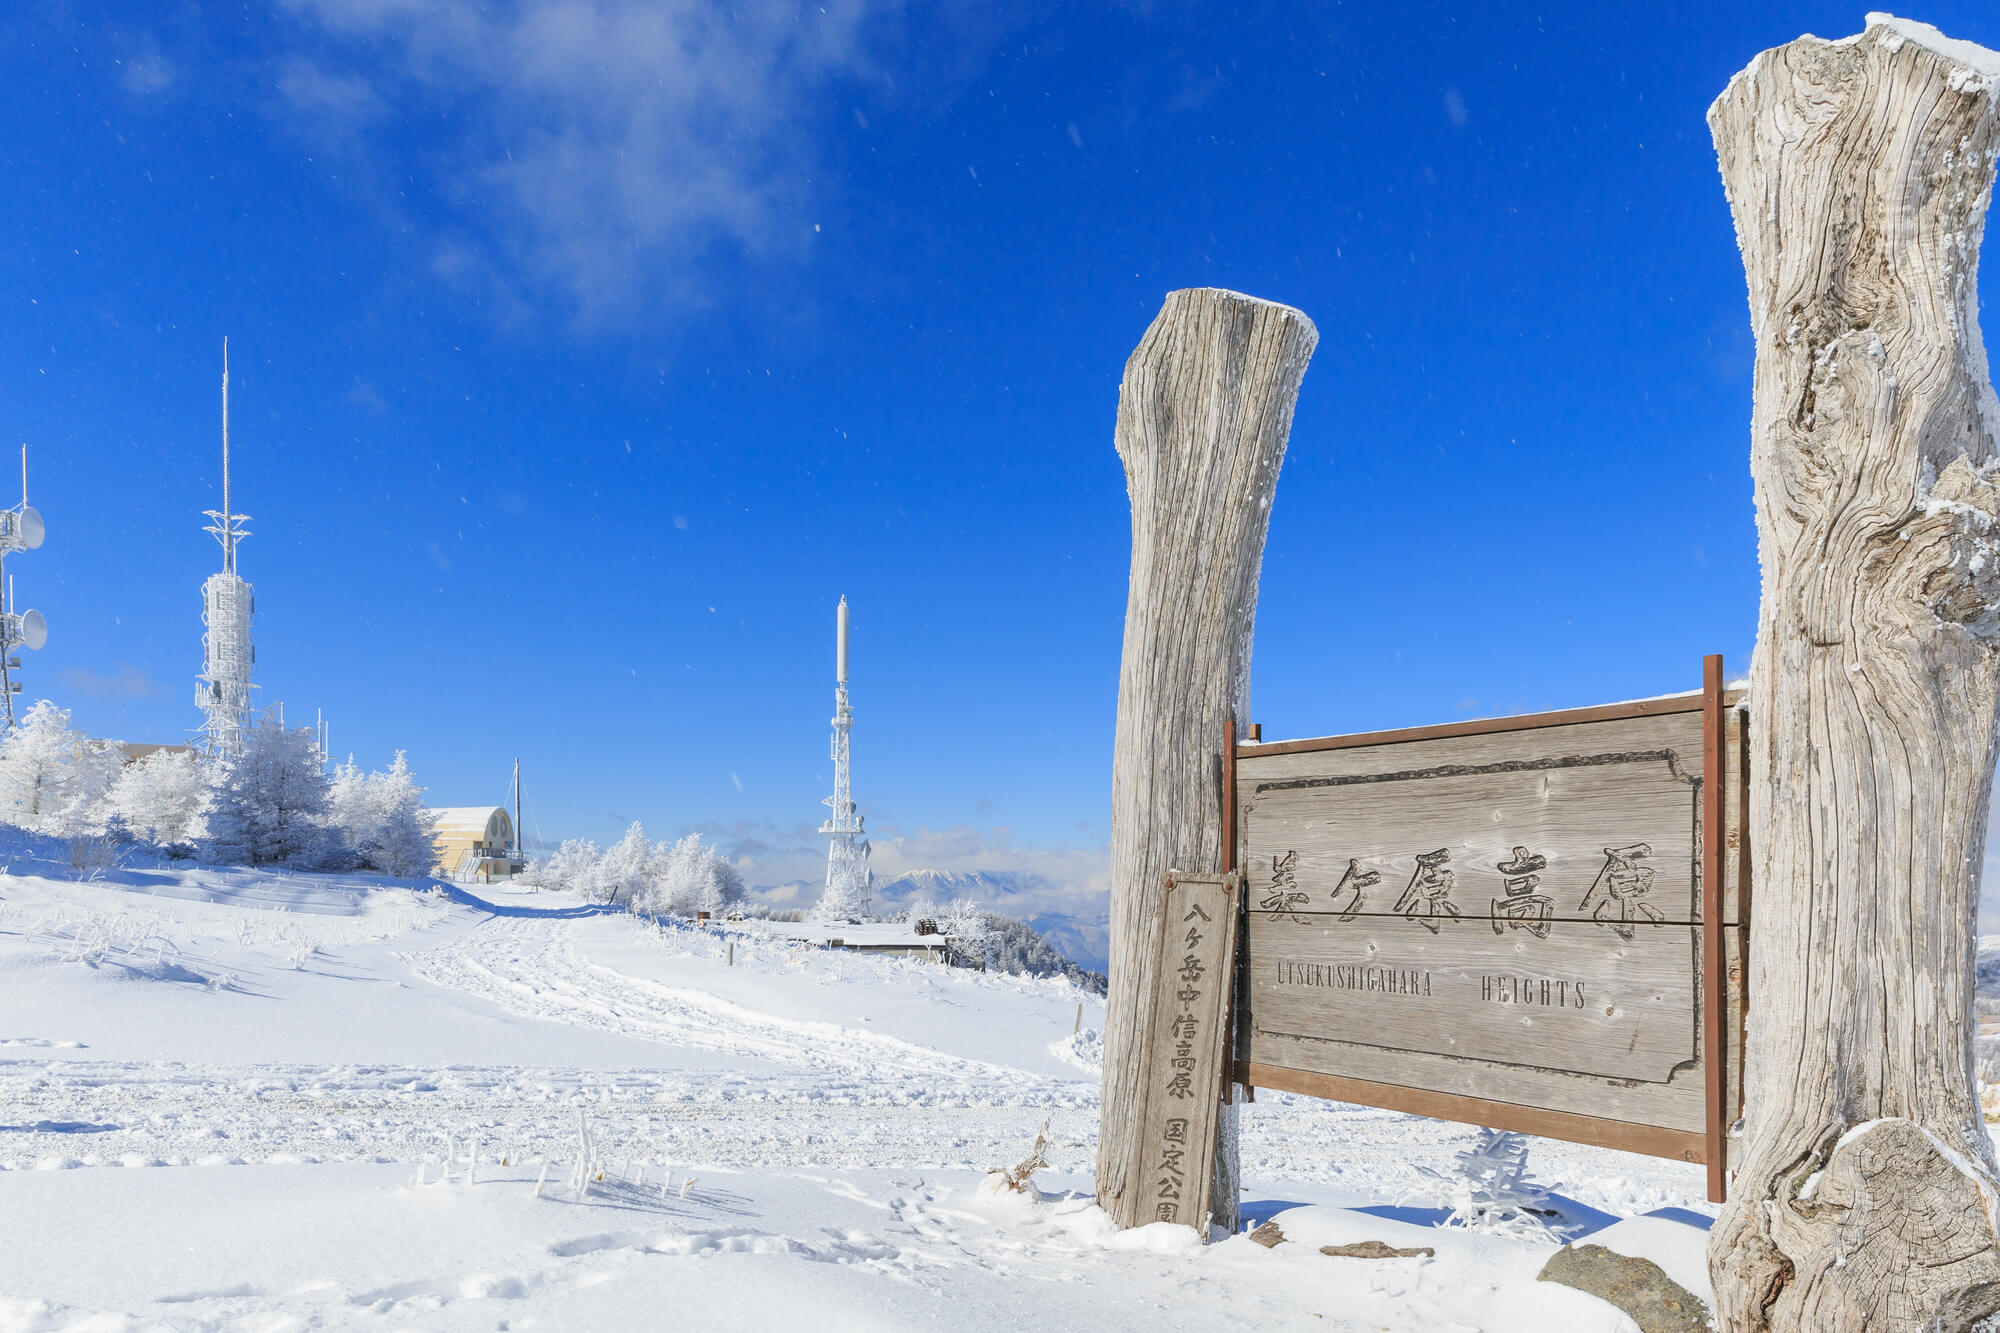 登山初心者におすすめ 雪の八ヶ岳 美ヶ原の見どころ Yamarii Magazine あの山に行きたいを叶える